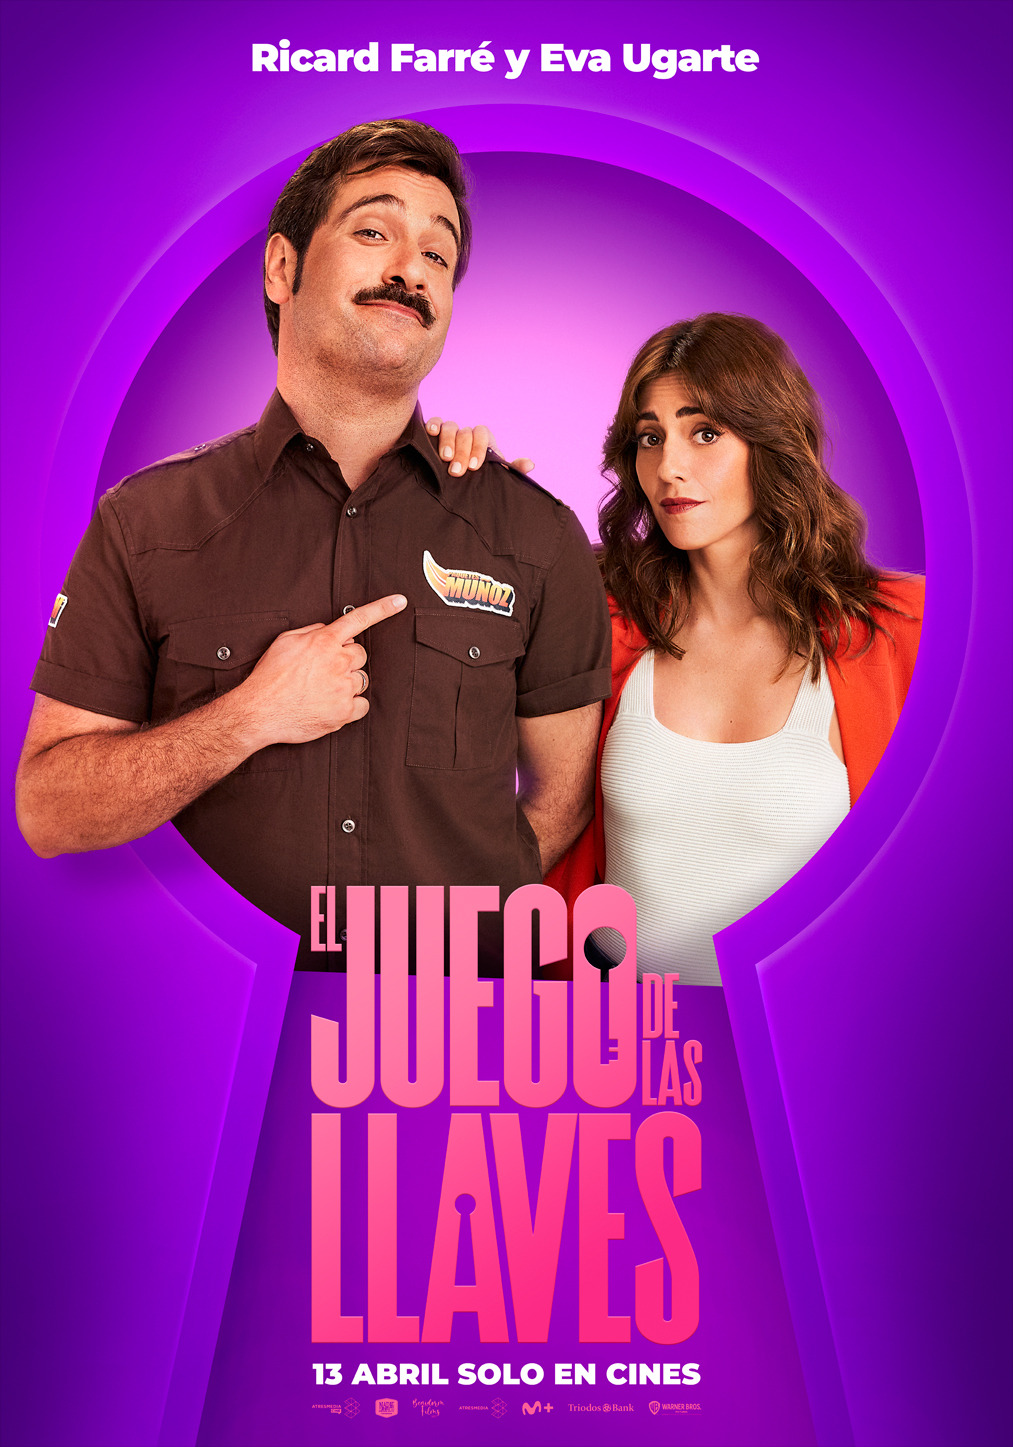 Extra Large Movie Poster Image for El juego de las llaves (#7 of 7)